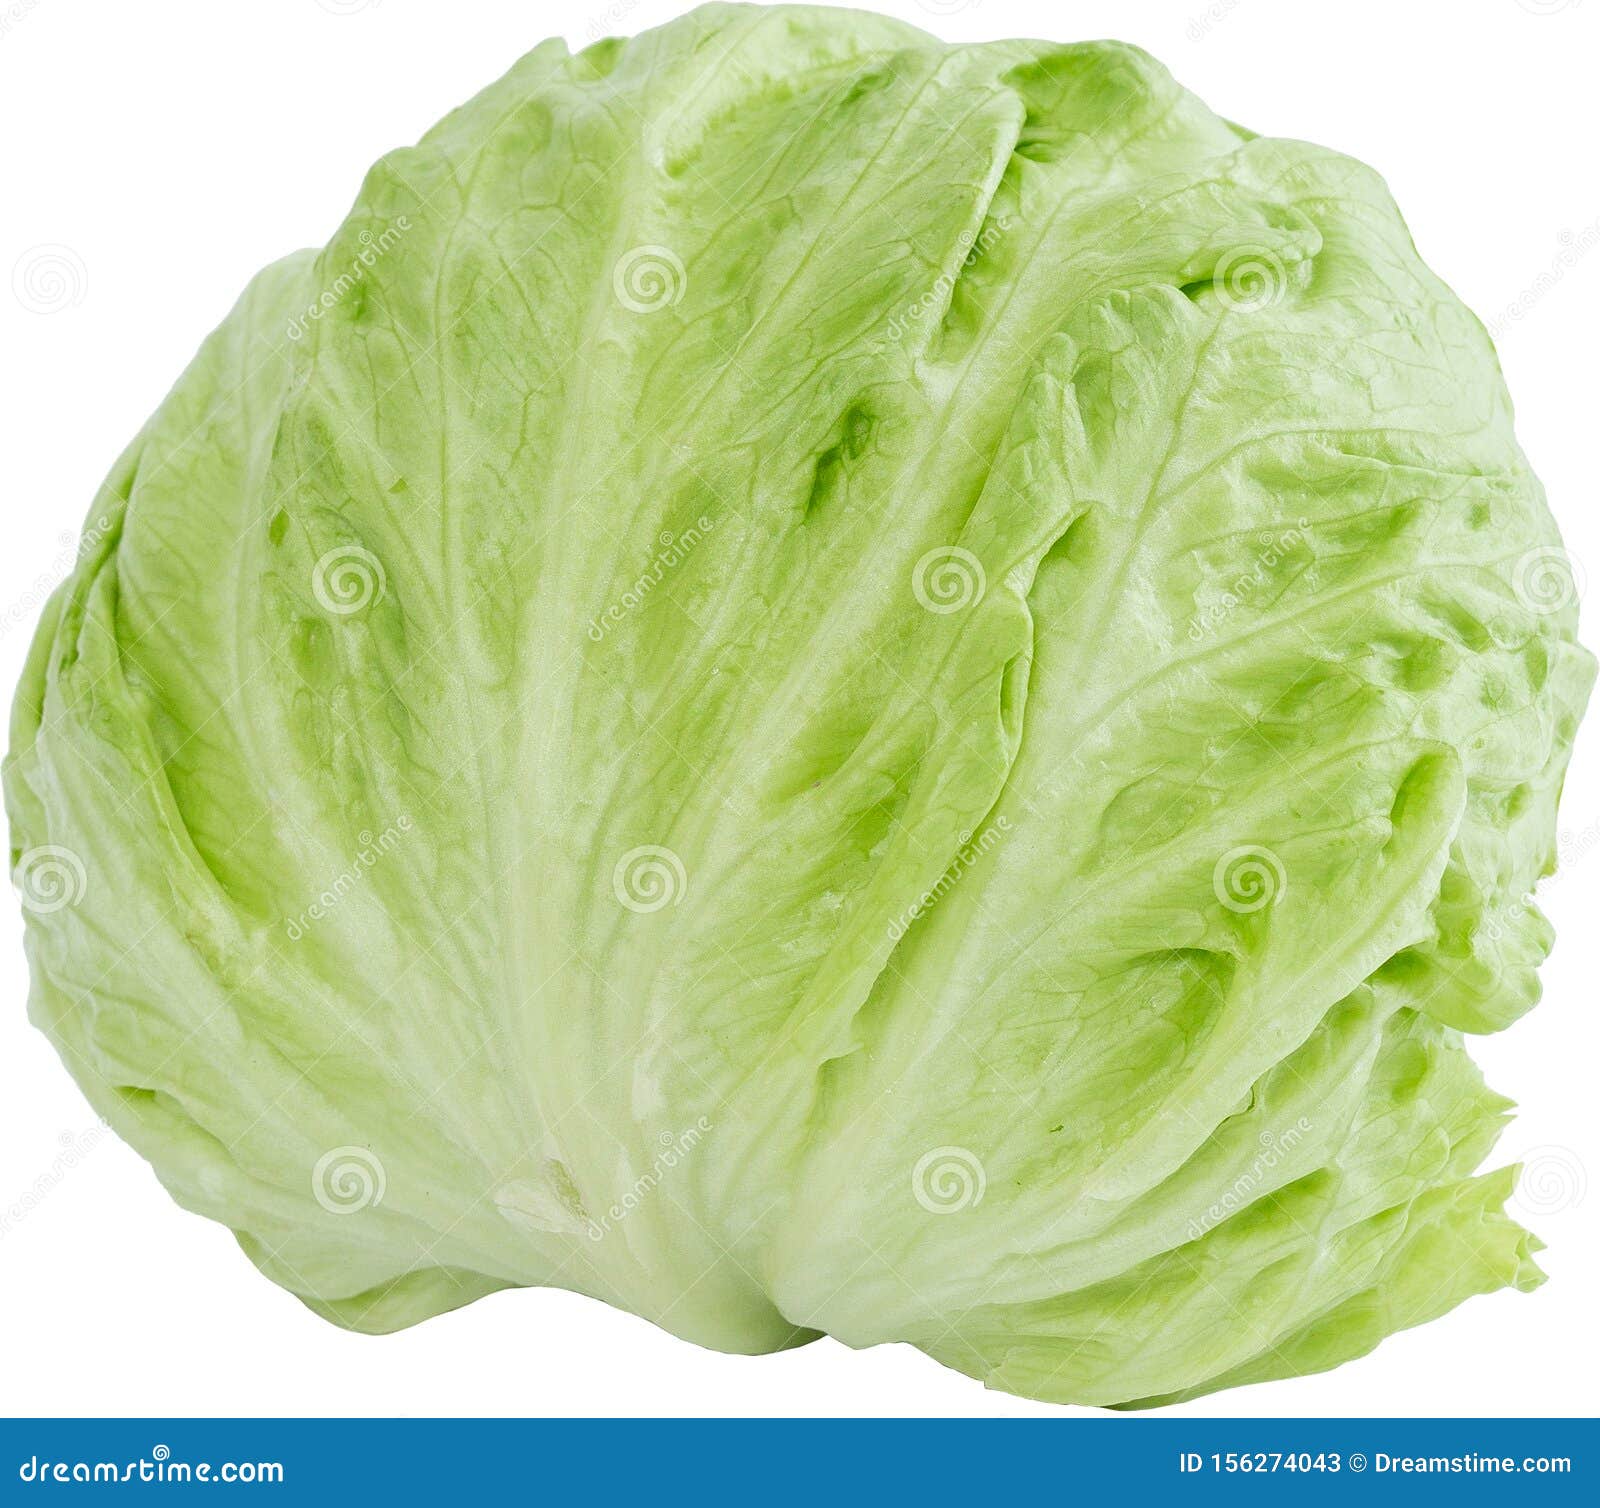 lechuga iceberg lettuce salad food